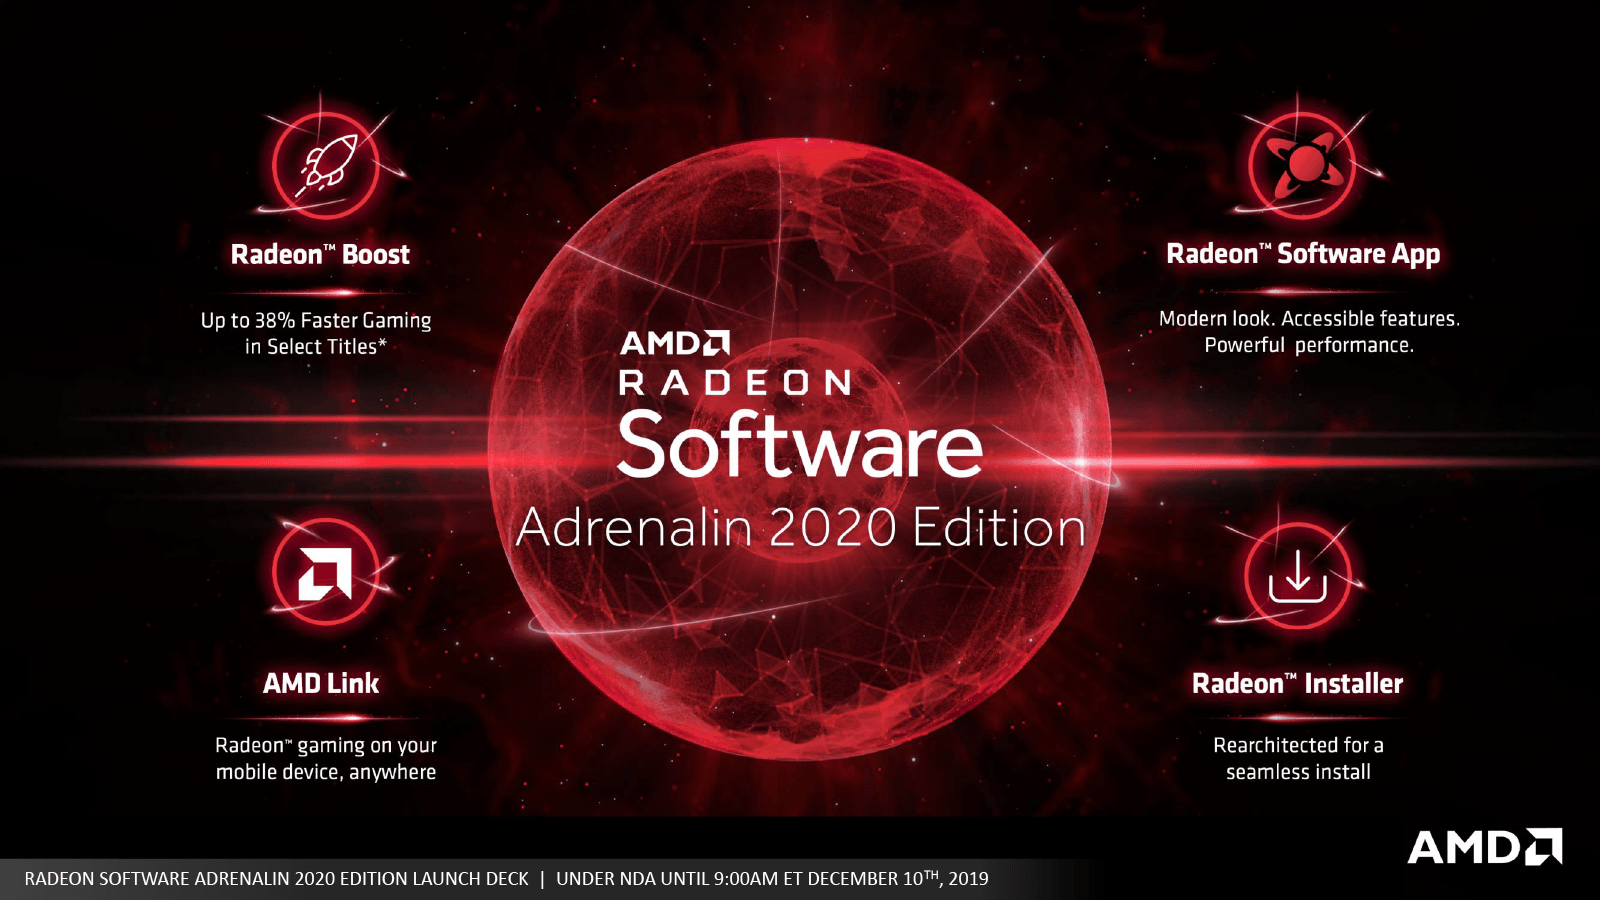 Amd 視覚的損失なし で2割以上fpsを向上できる新 Radeon Software